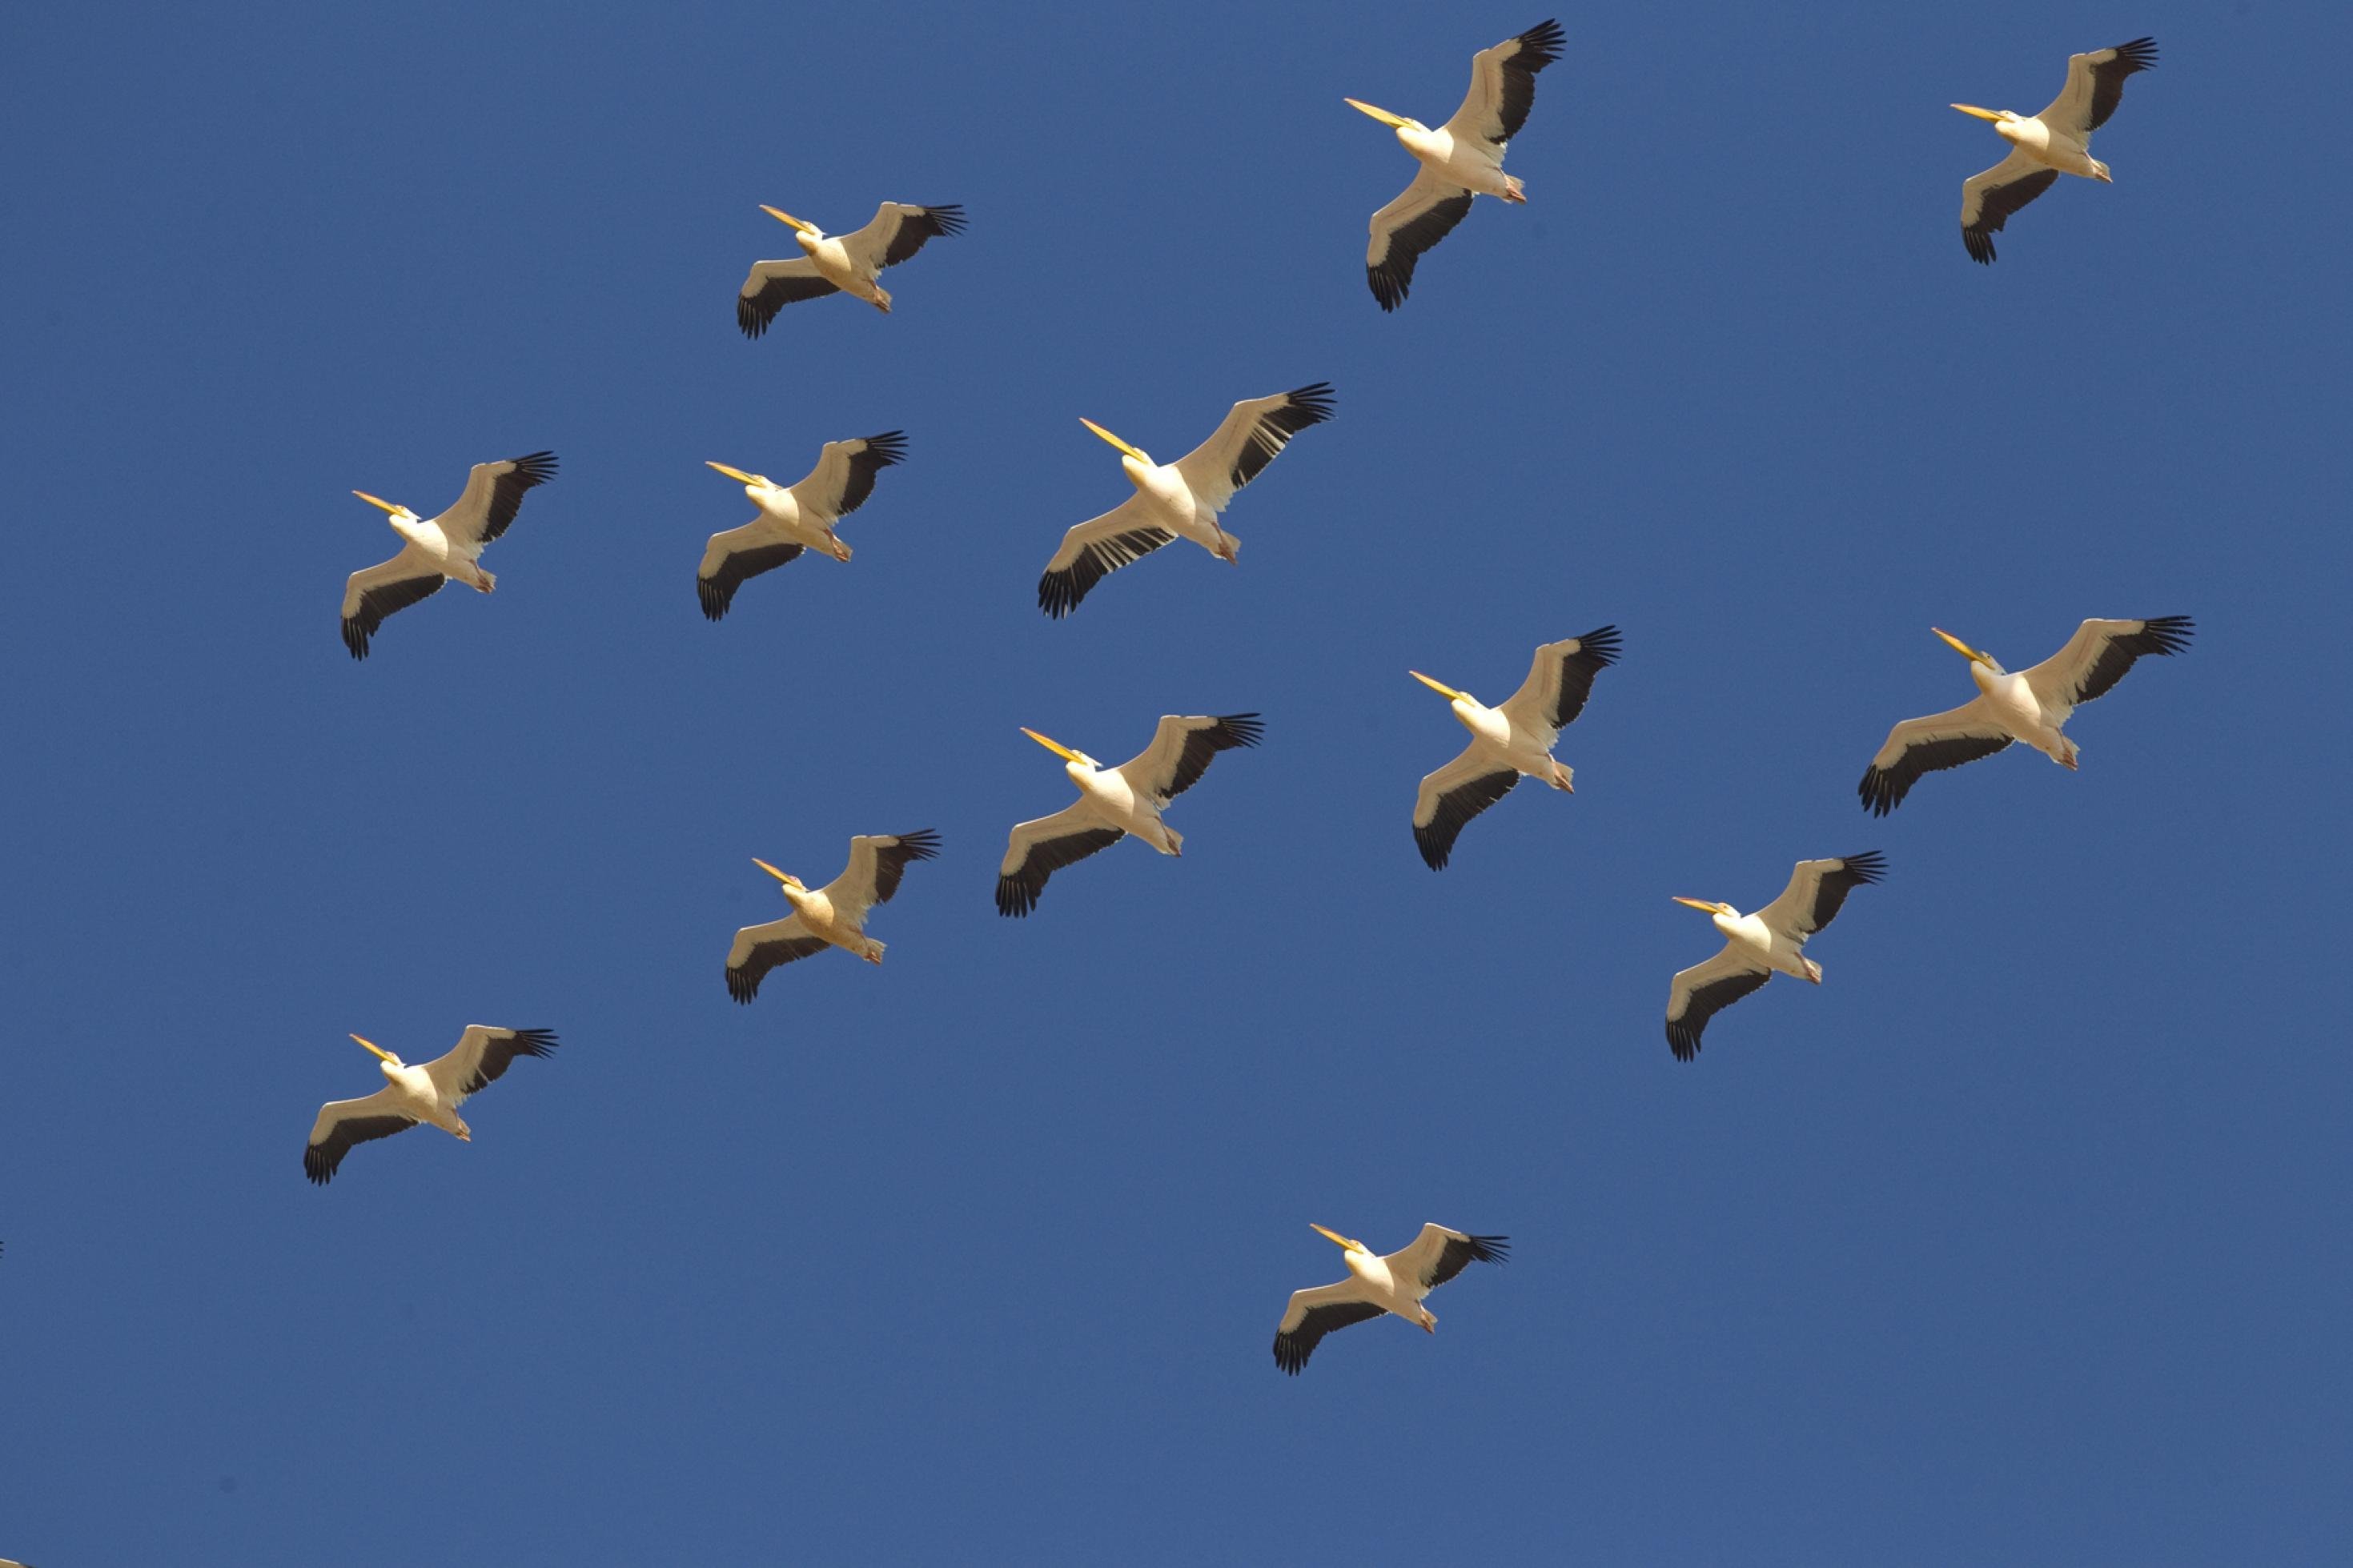 Rosapelikane sind die schwersten flugfähigen Vögel Europas. Alle in Europa brütenden Pelikane ziehen über den israelischen Luftraum und stellen eine besondere Gefahr für den menschlichen Luftverkehr dar.